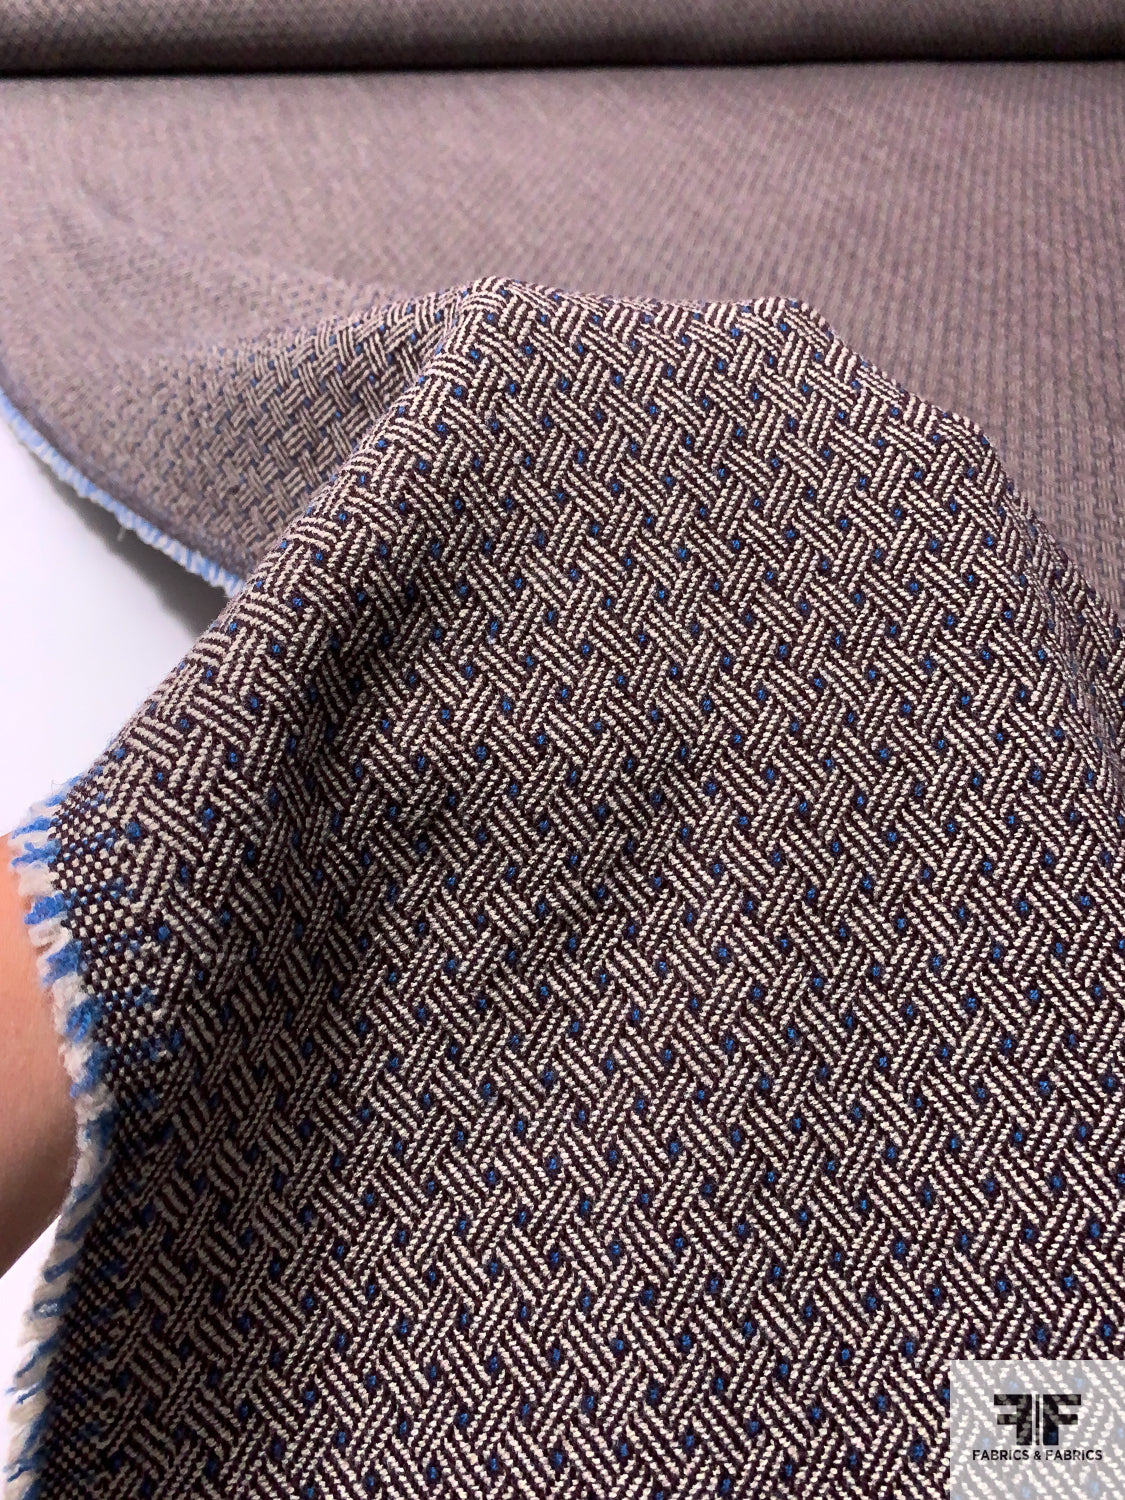 Italian Diagonal Basketweave Wool Jacket Weight - Maroon / Beige / Blue